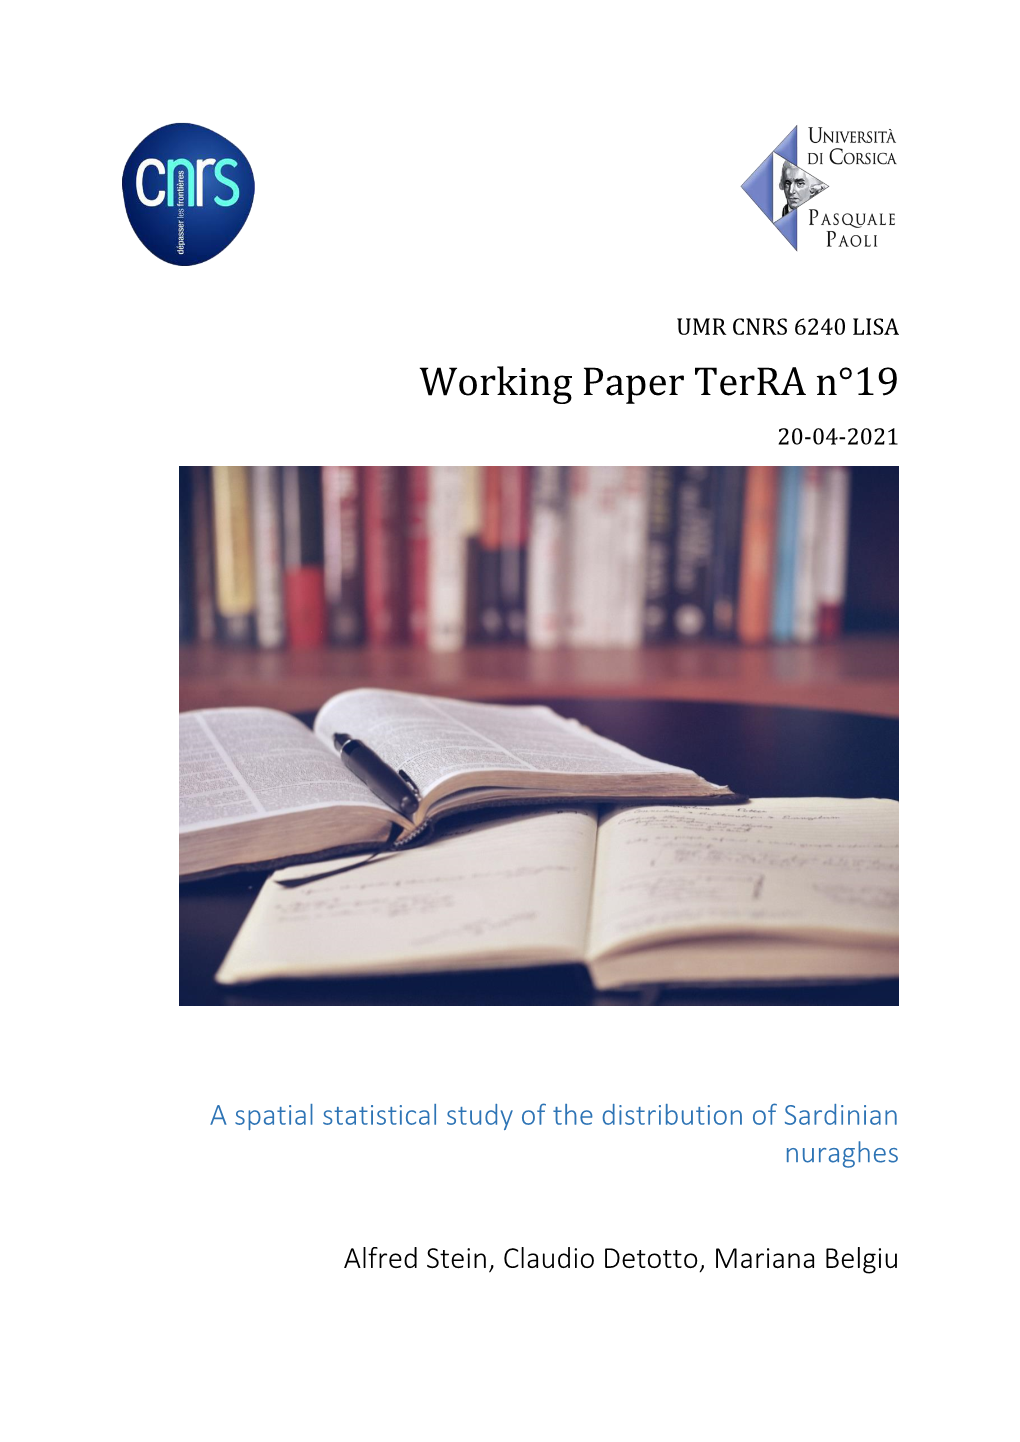 Working Paper Terra N°19